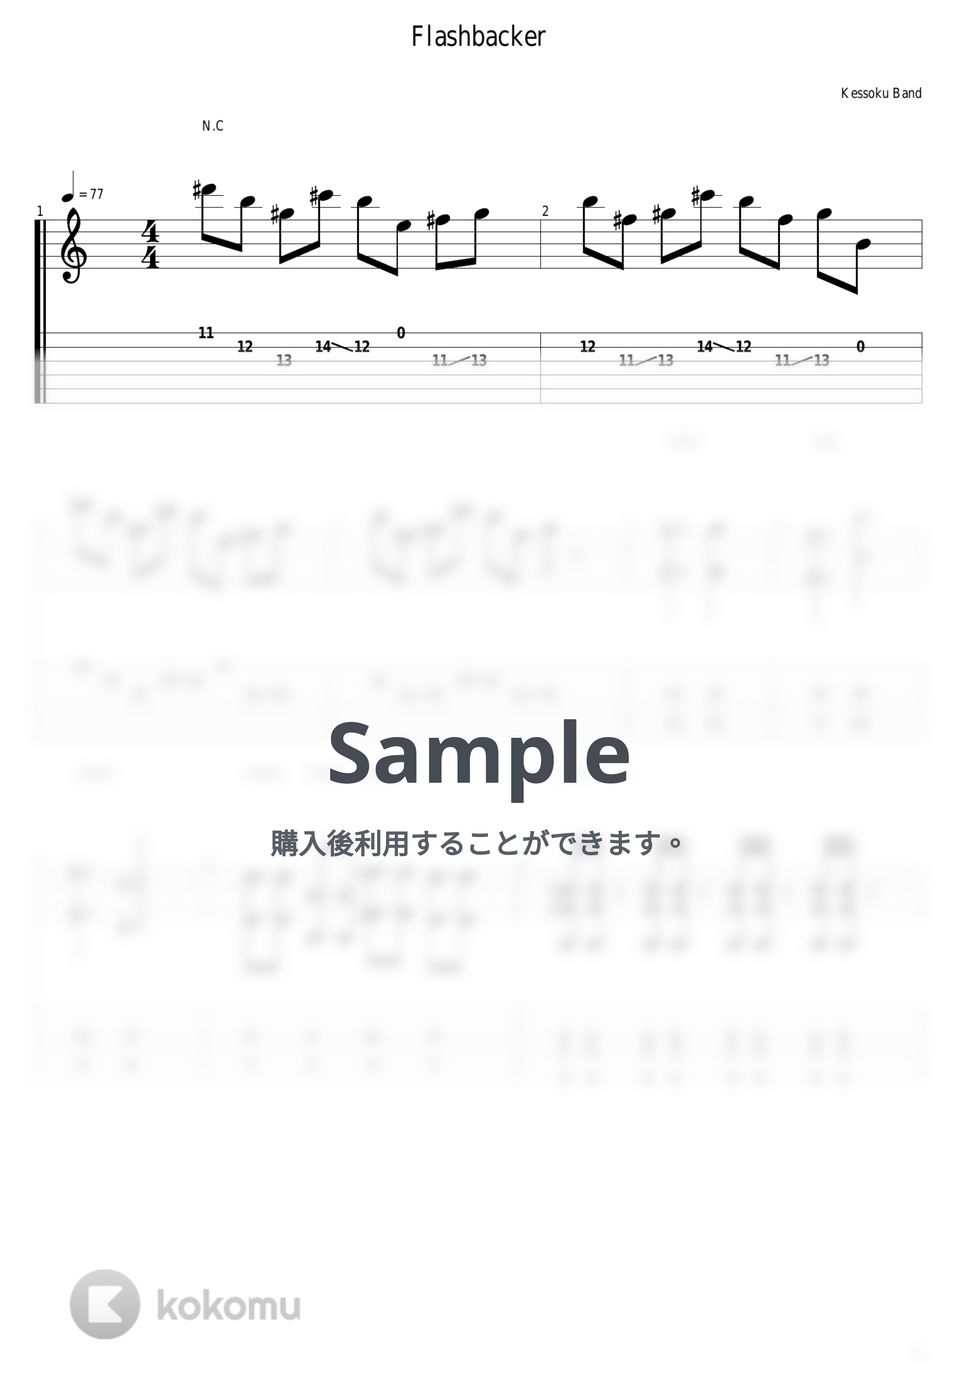 結束バンド - フラッシュバッカー by guitar cover with tab